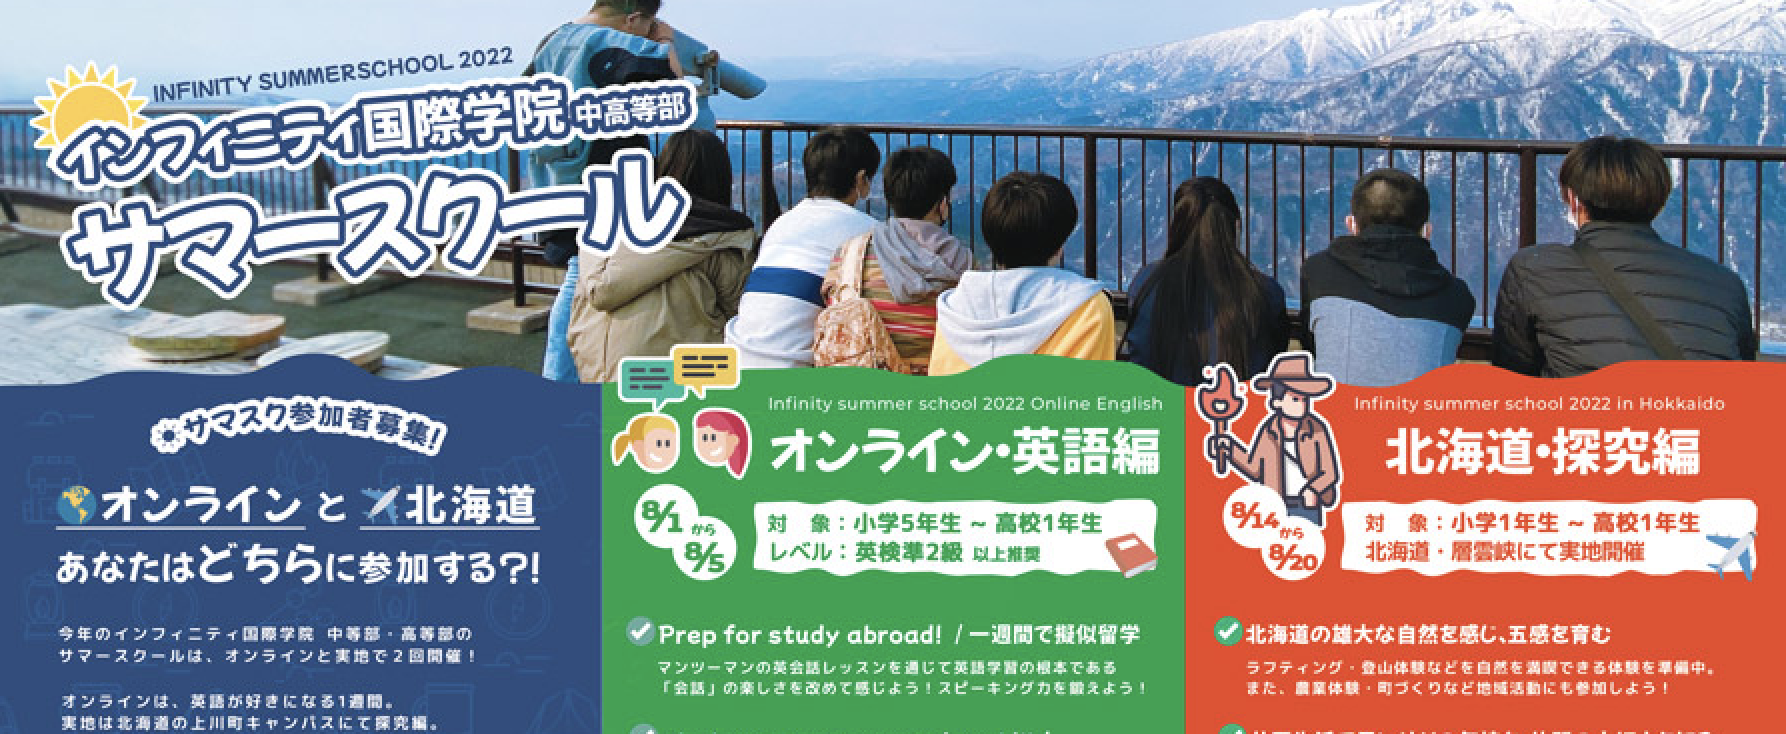 探究編 サマースクール「Infinity summer school 2022 in Hokkaido」